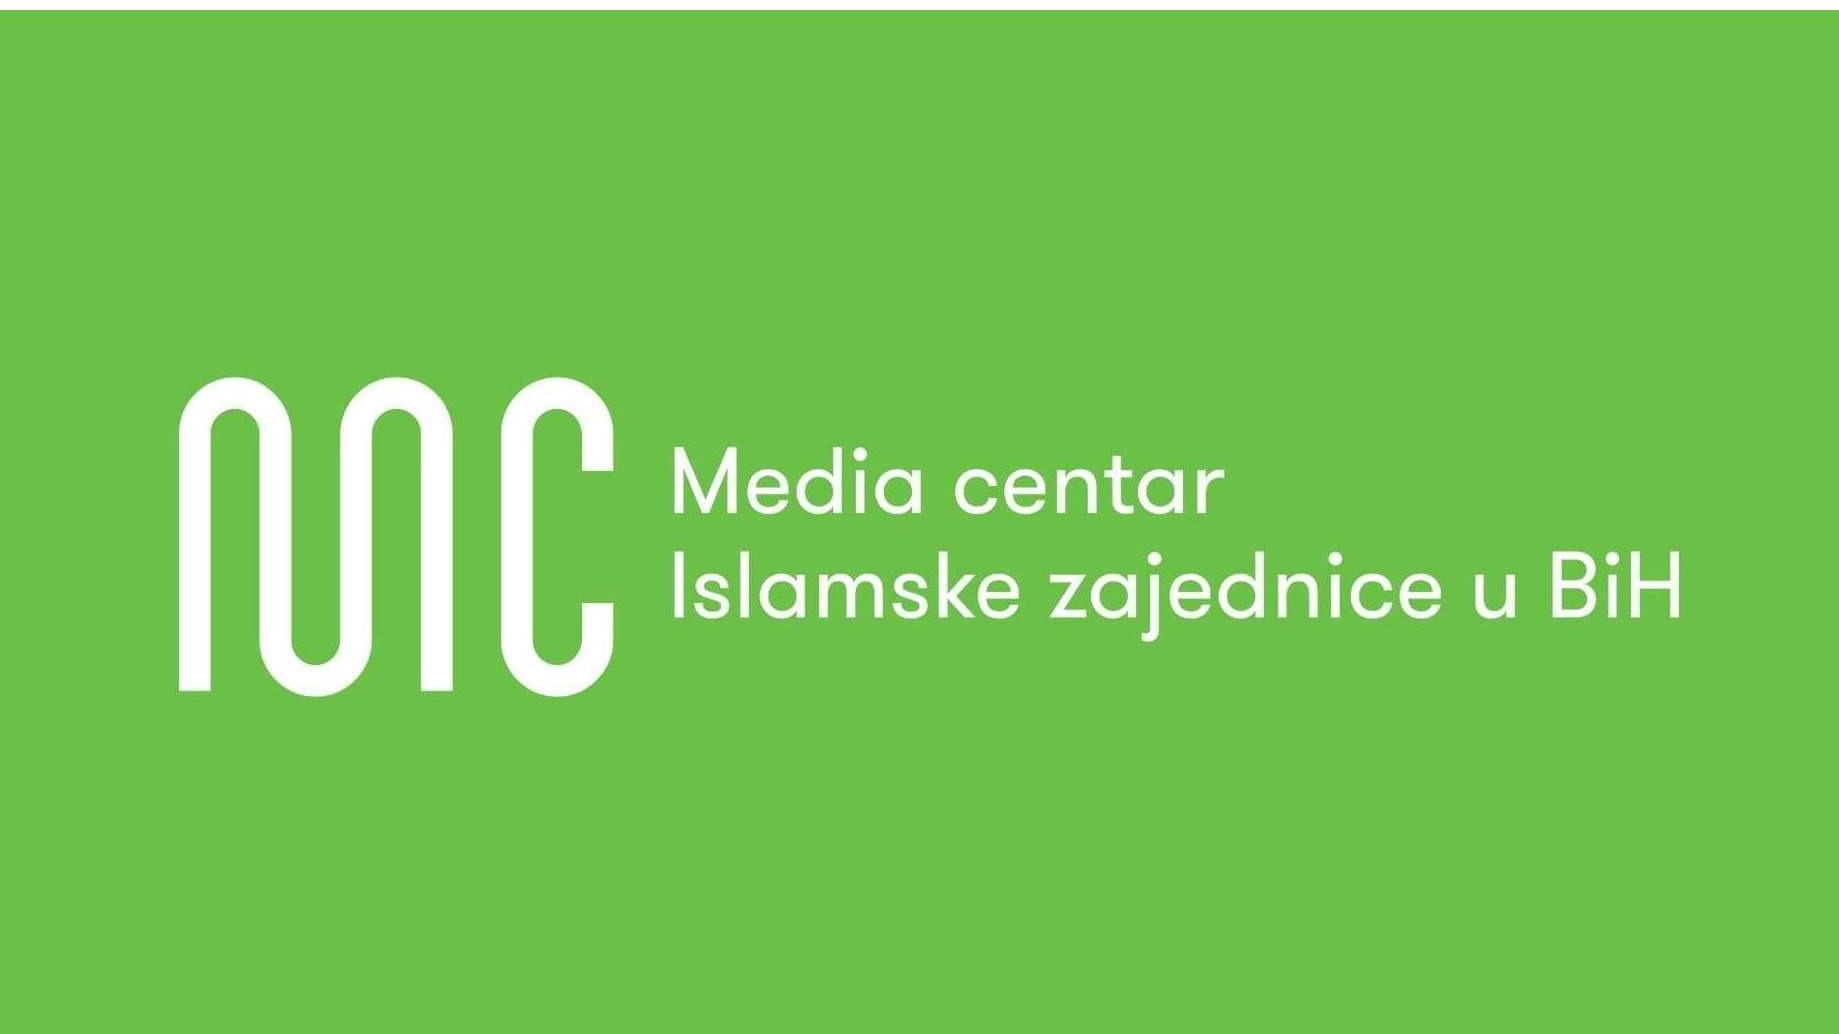 Konkurs za poziciju lektora u Media centru Islamske zajednice u BiH